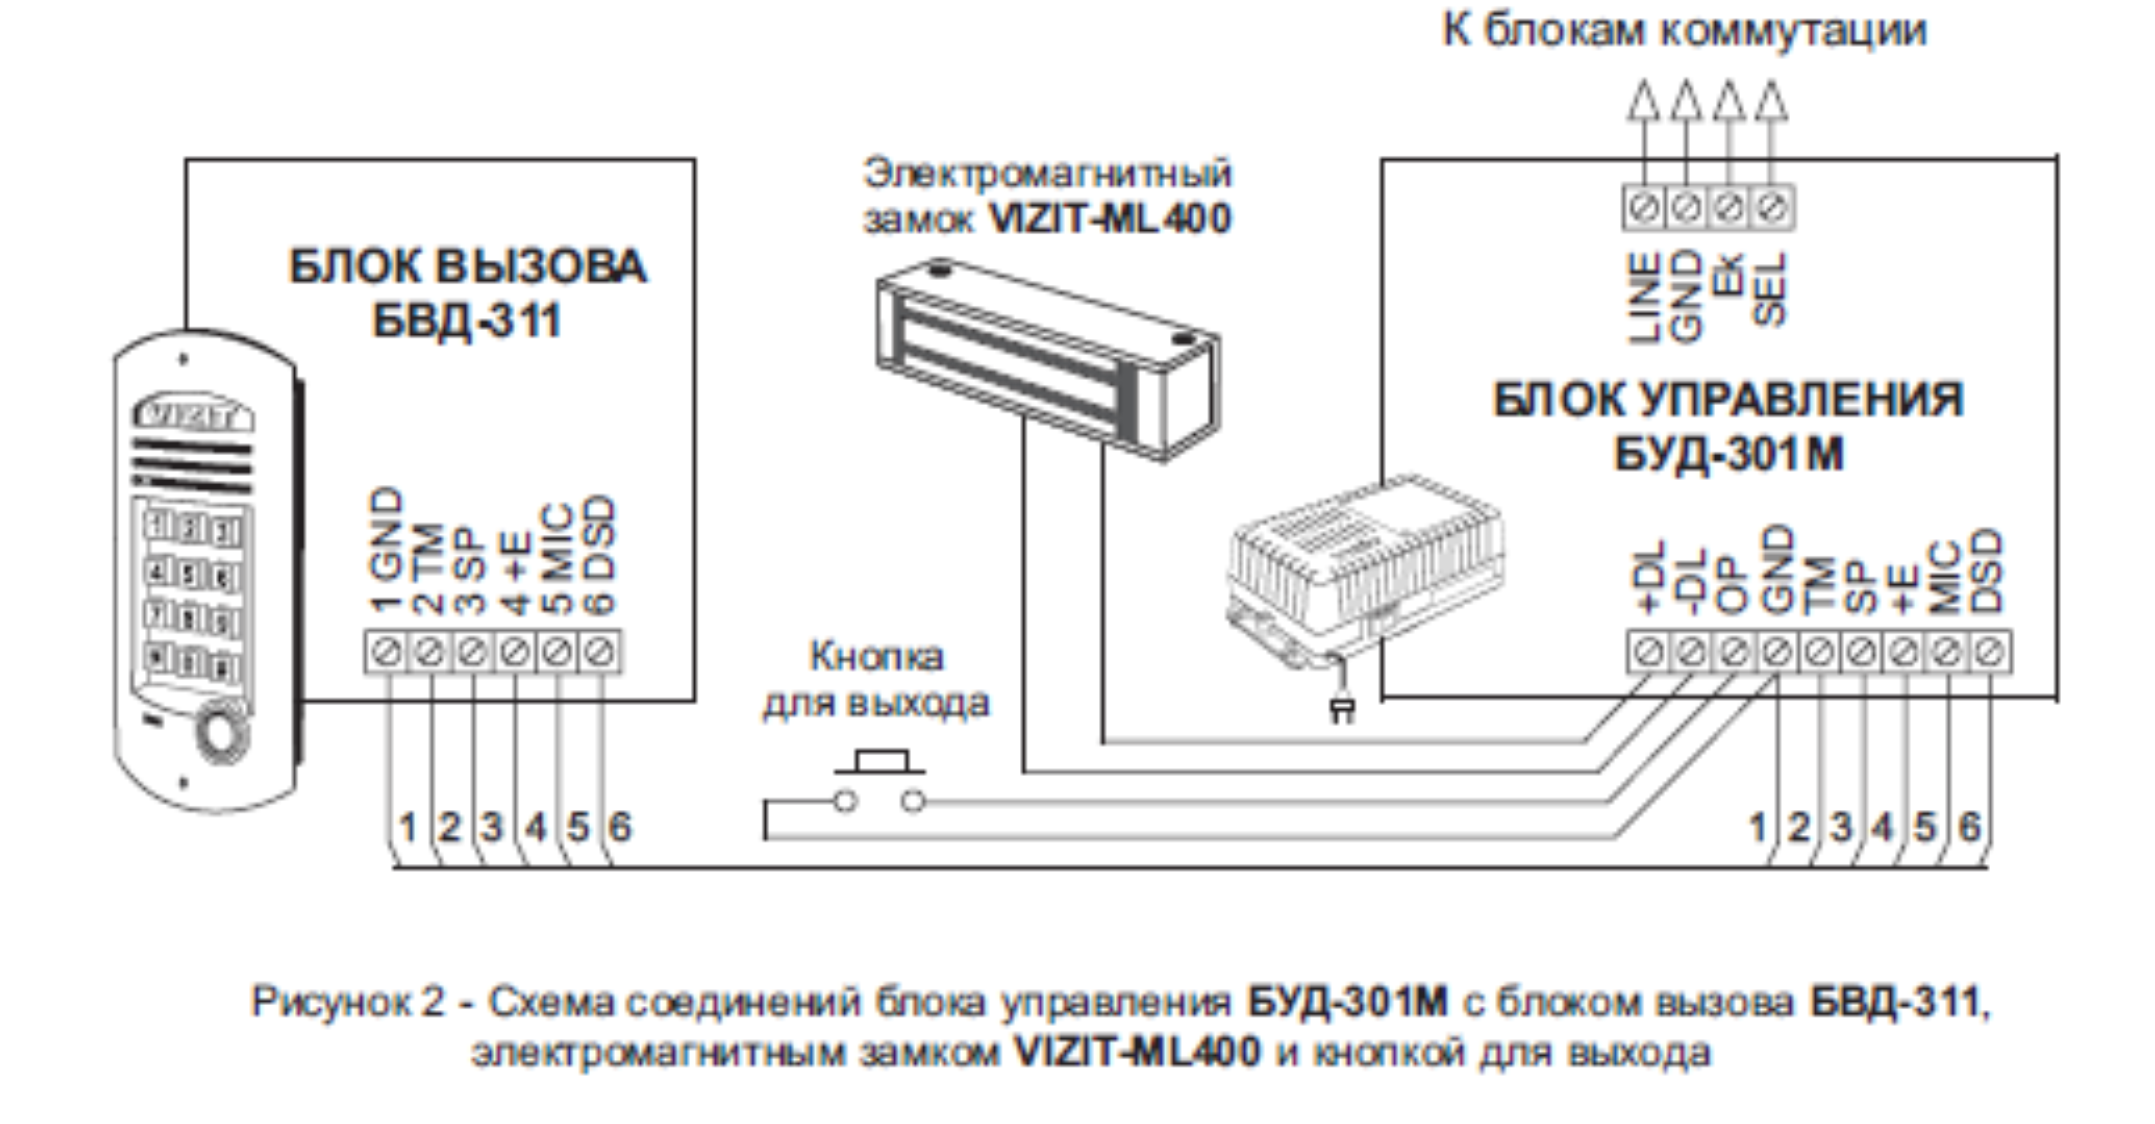 Схема соединений блока управления БУД-301М с блоком вызова БВД-311, электромагнитным замком VIZIT-ML400 и кнопкой для выхода